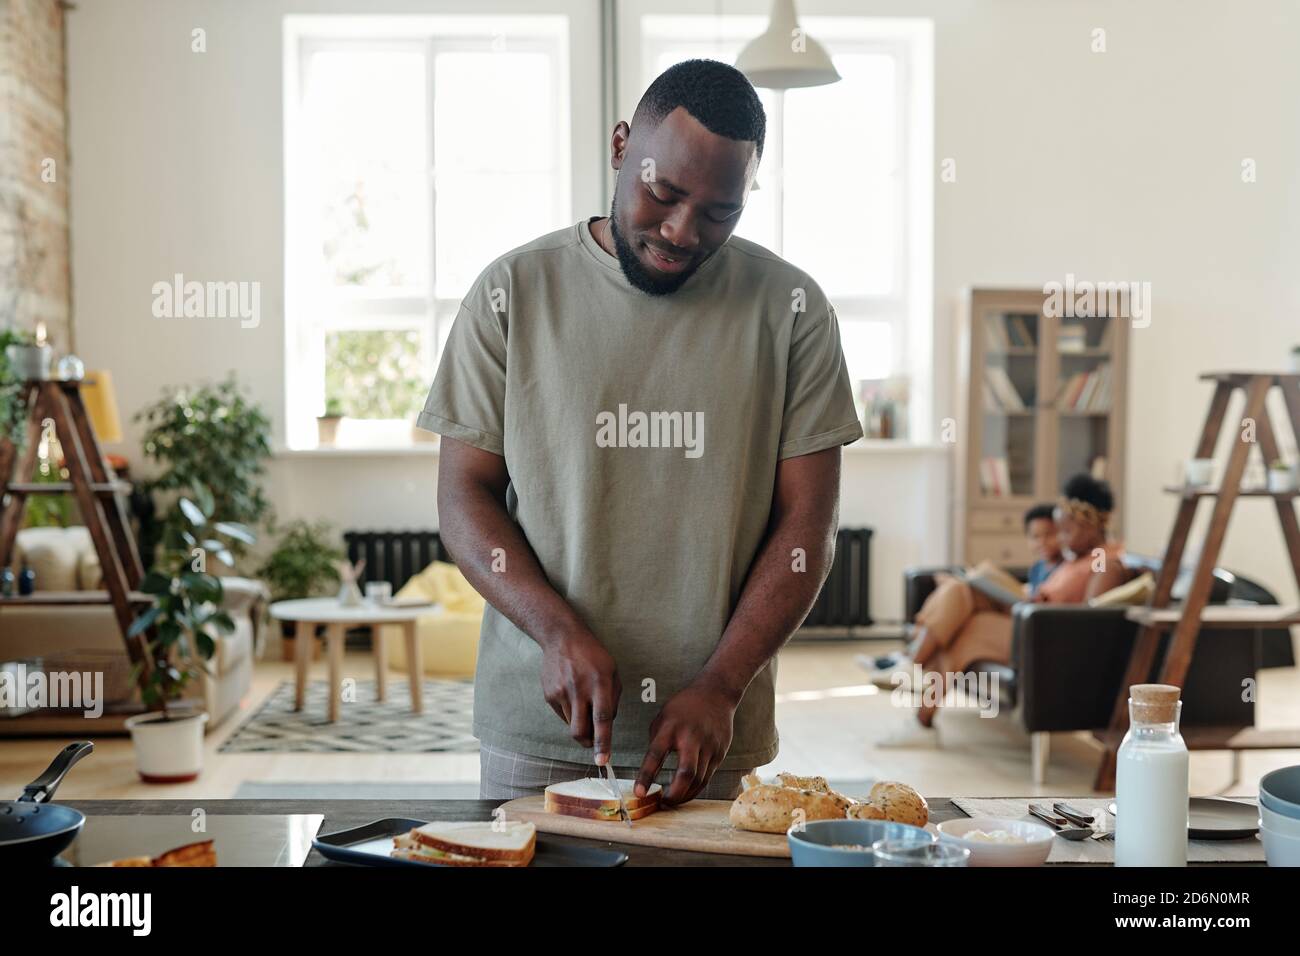 Jeune barbu d'origine africaine préparant des sandwichs pour le petit déjeuner Banque D'Images